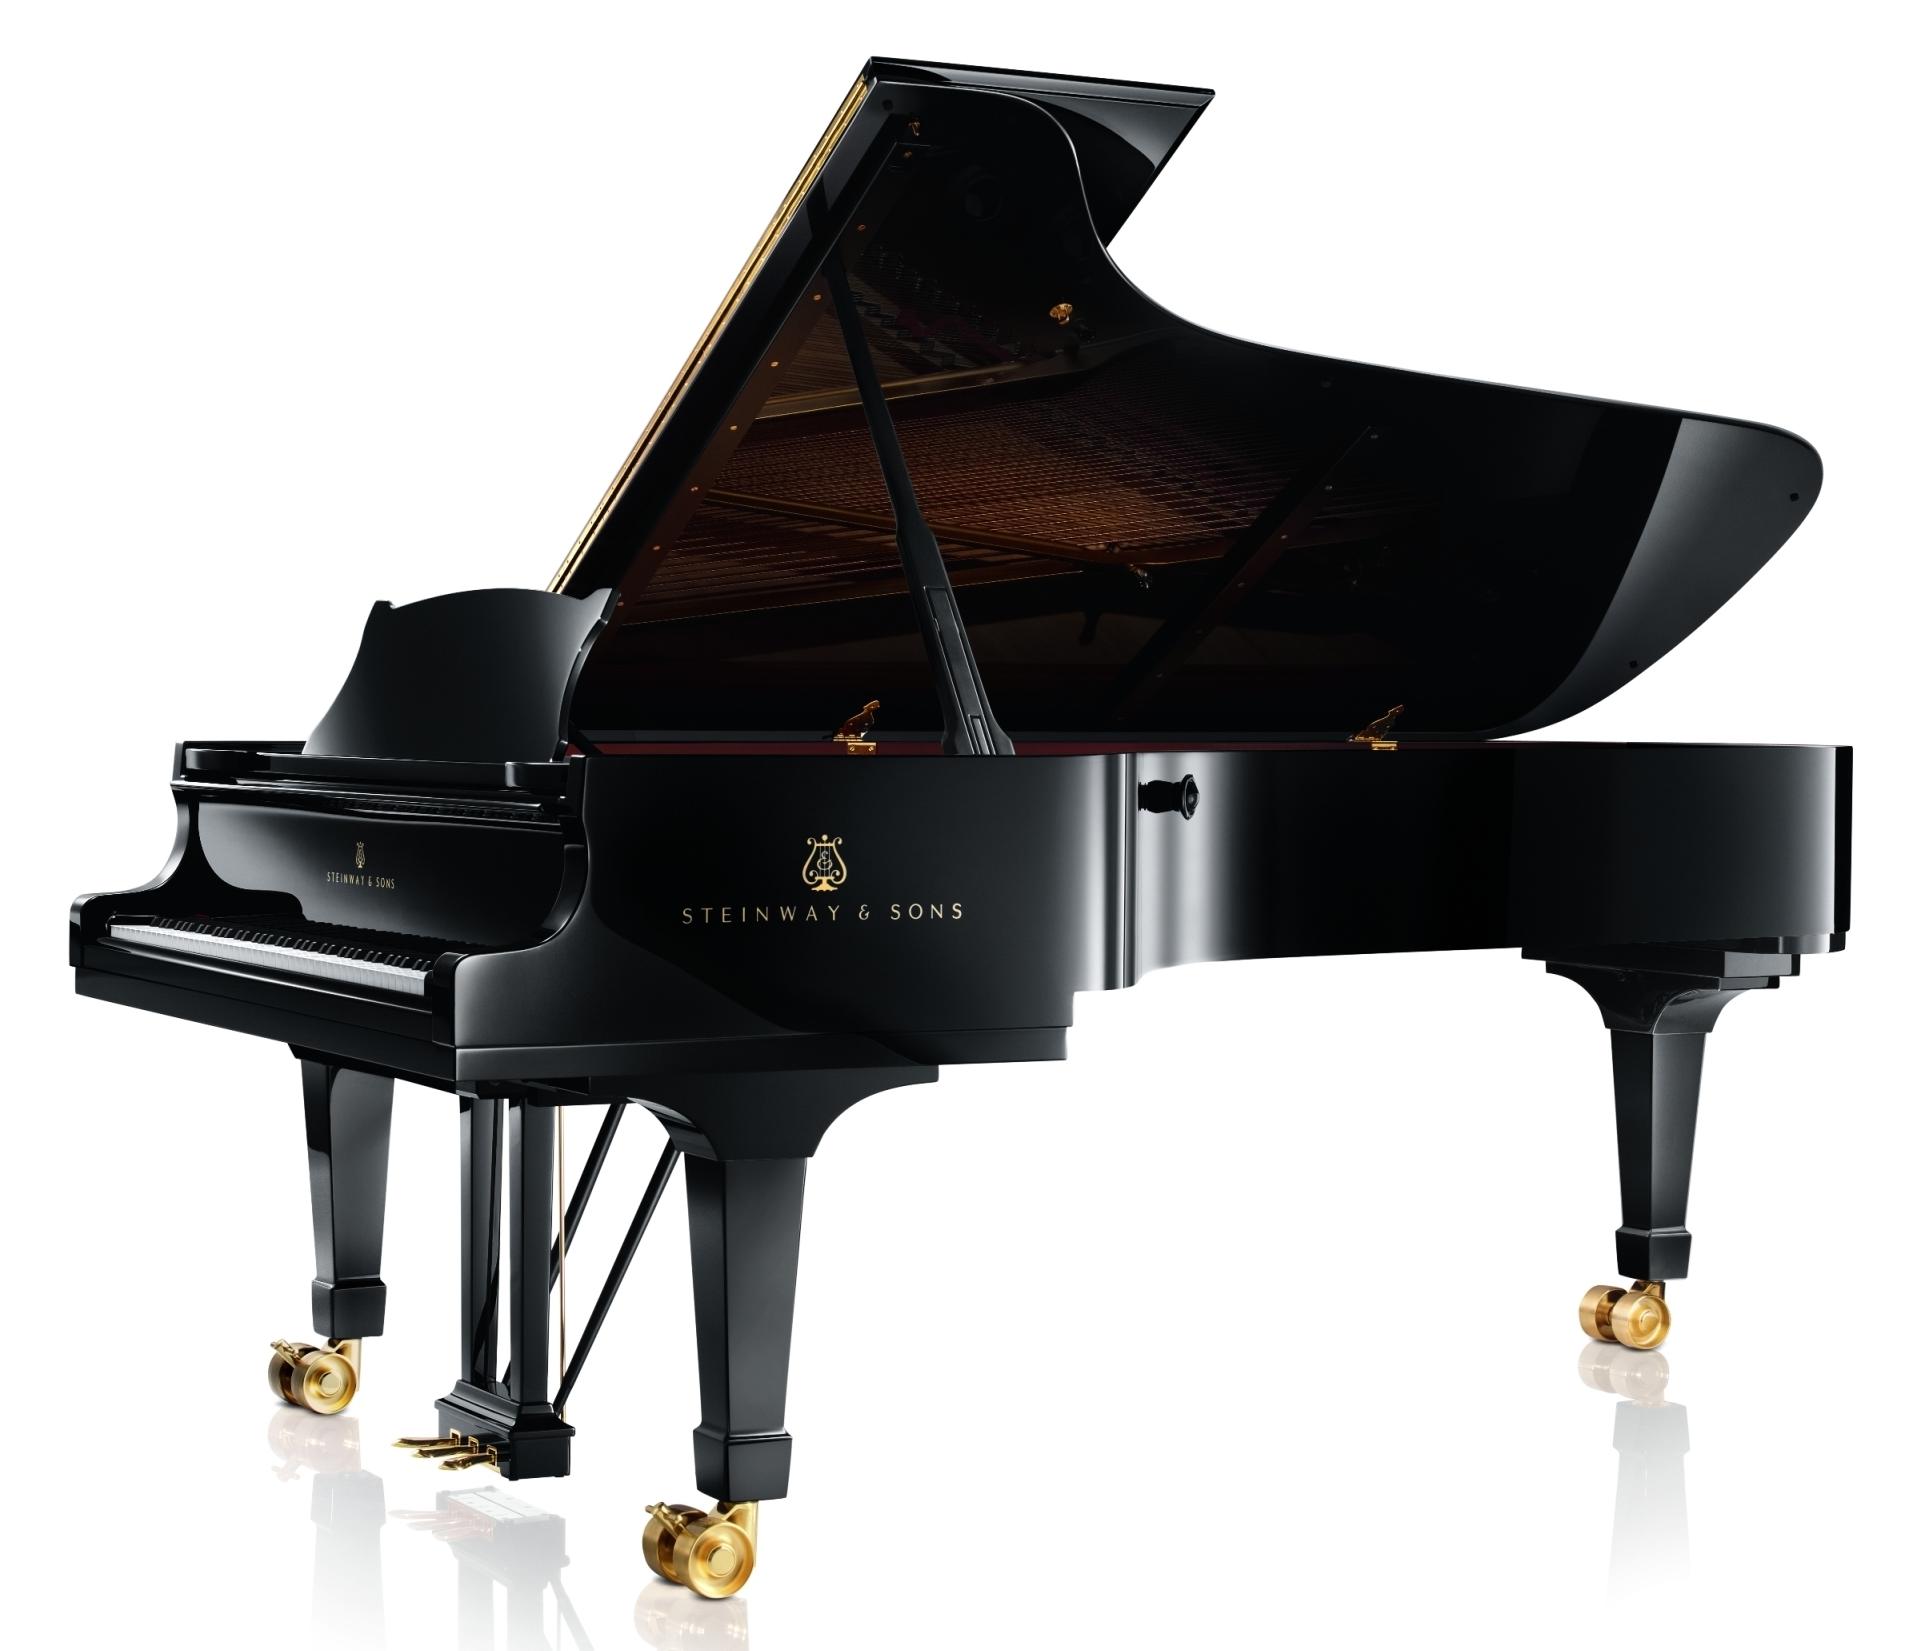 Comprar un piano. Guía de marcas y precios. Piano Steinway gran cola